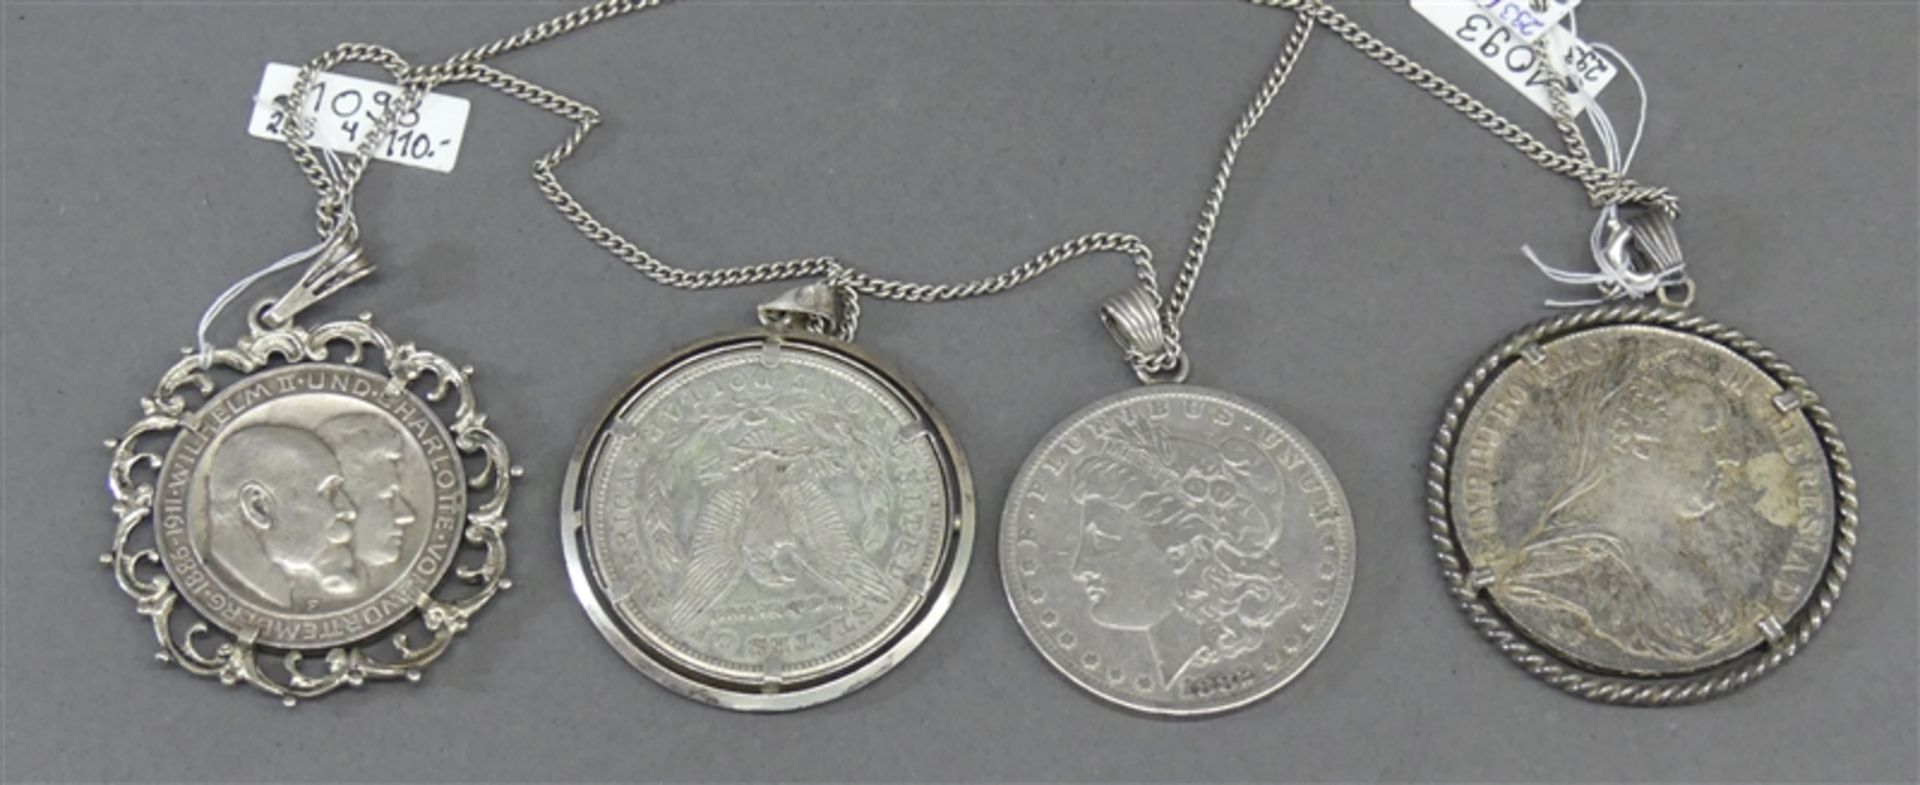 4 Münzen als Anhänger, Silber, 2x One Dollar, 1x Drei Mark, Deutsches Reich, 1x Maria Theresia, 1x